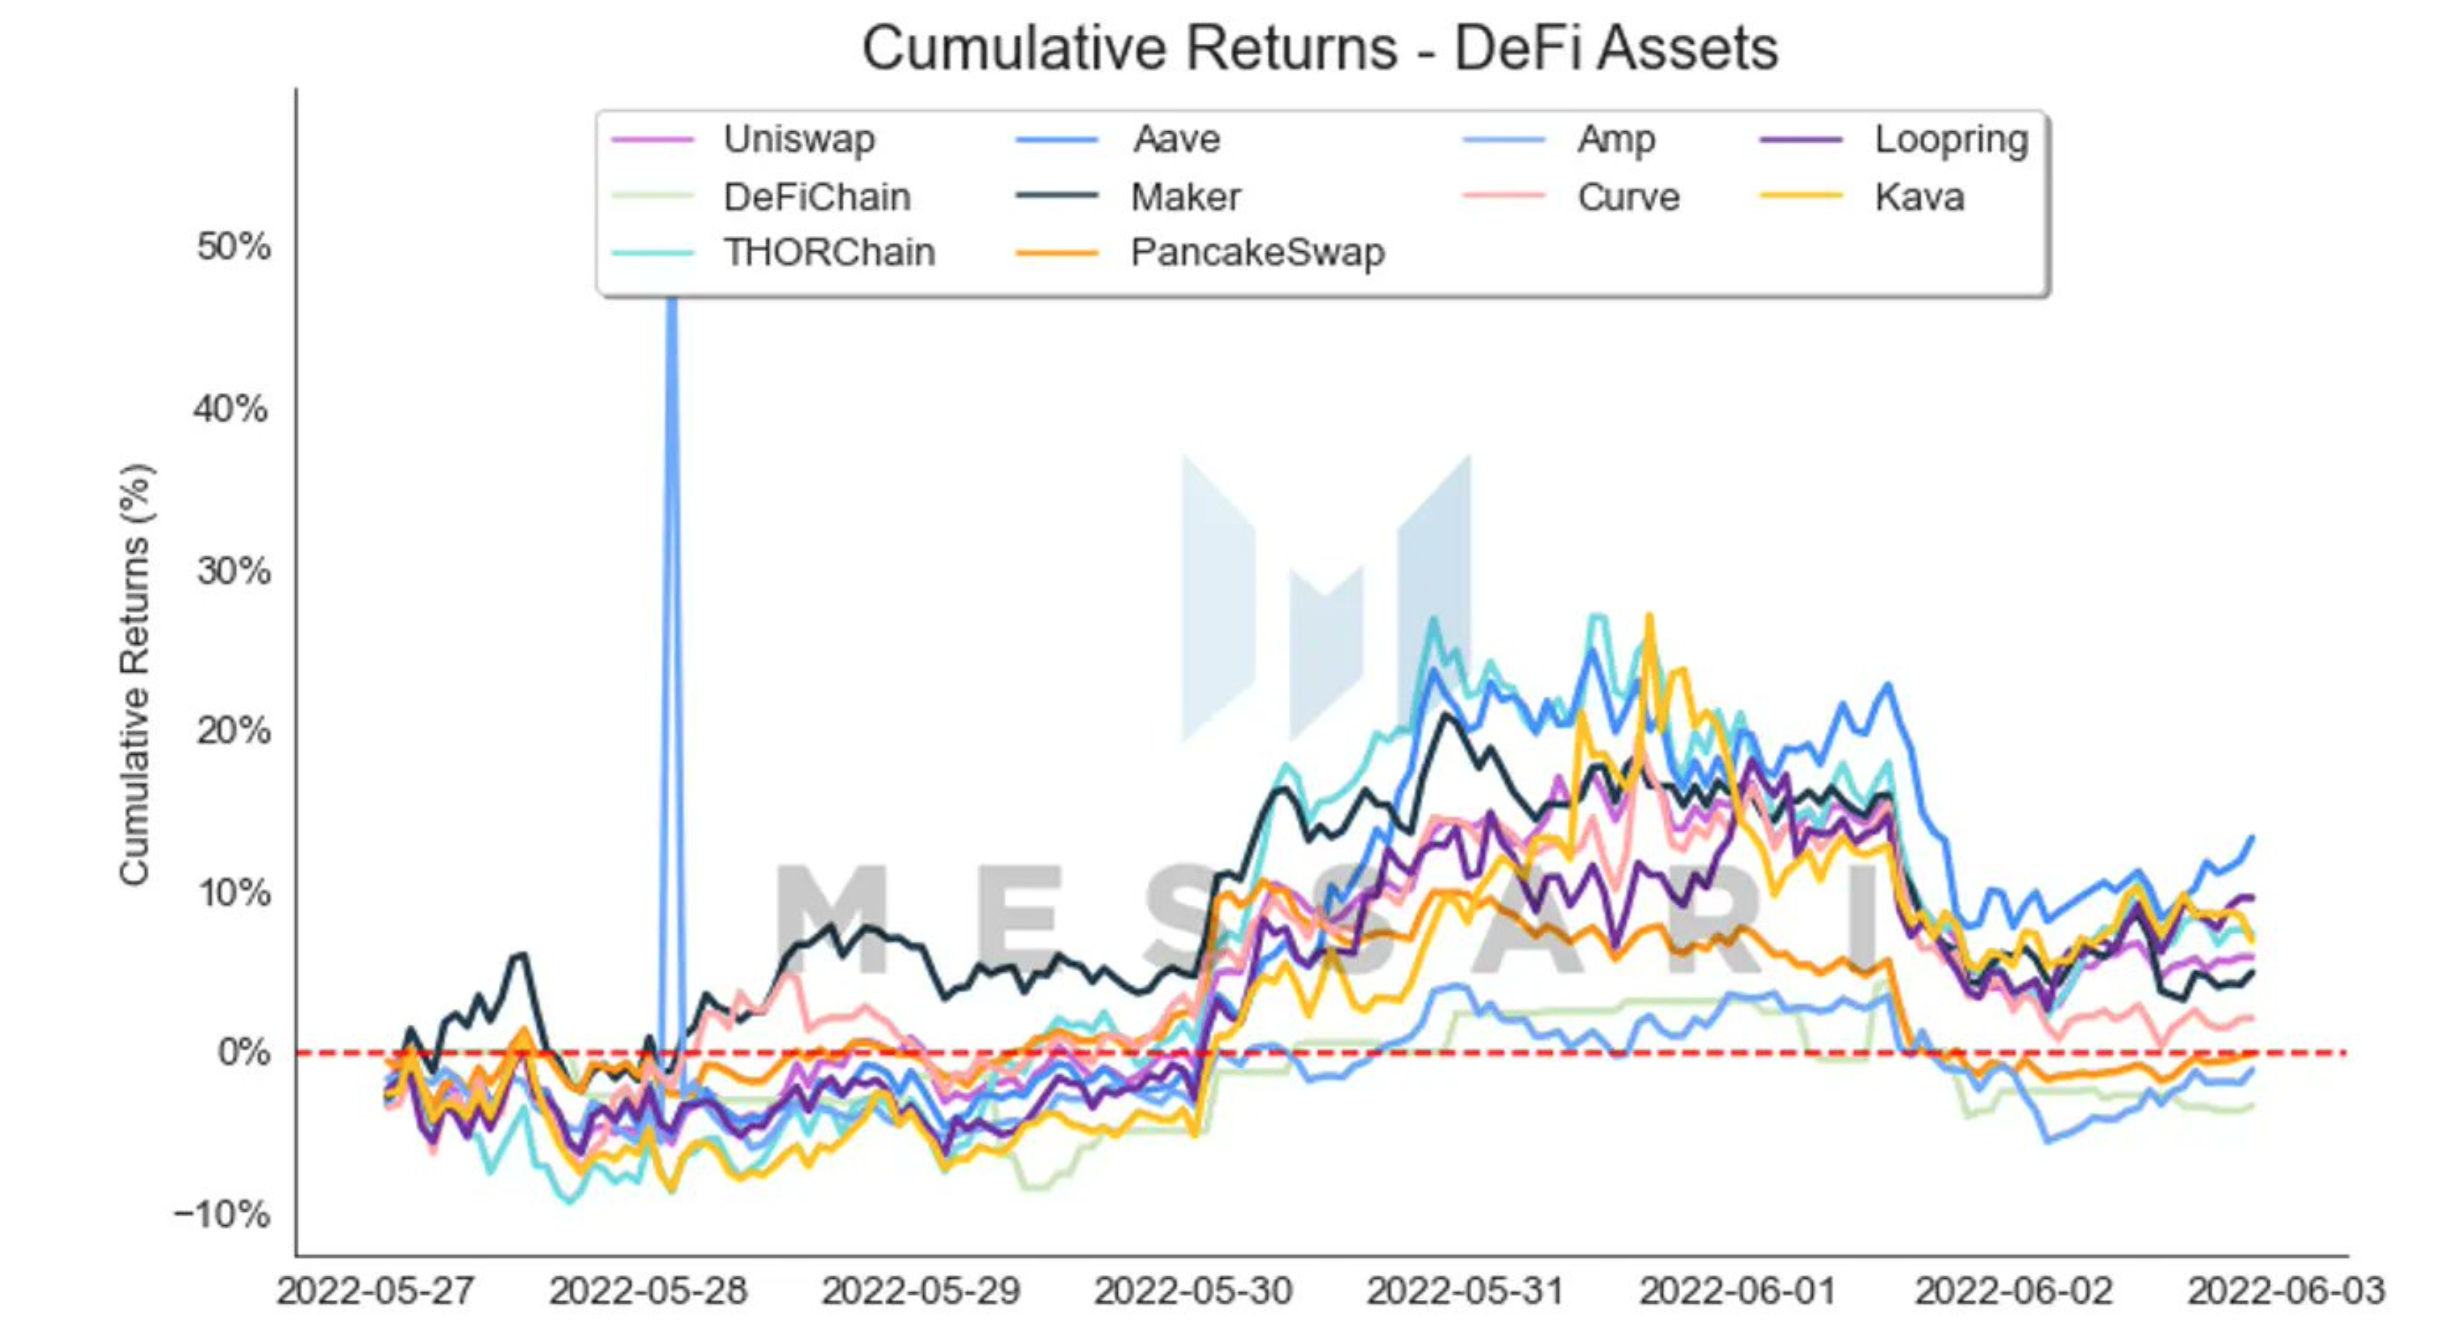 AAVE ve los mayores rendimientos acumulados dentro de los activos de DeFi, pero aquí está la advertencia